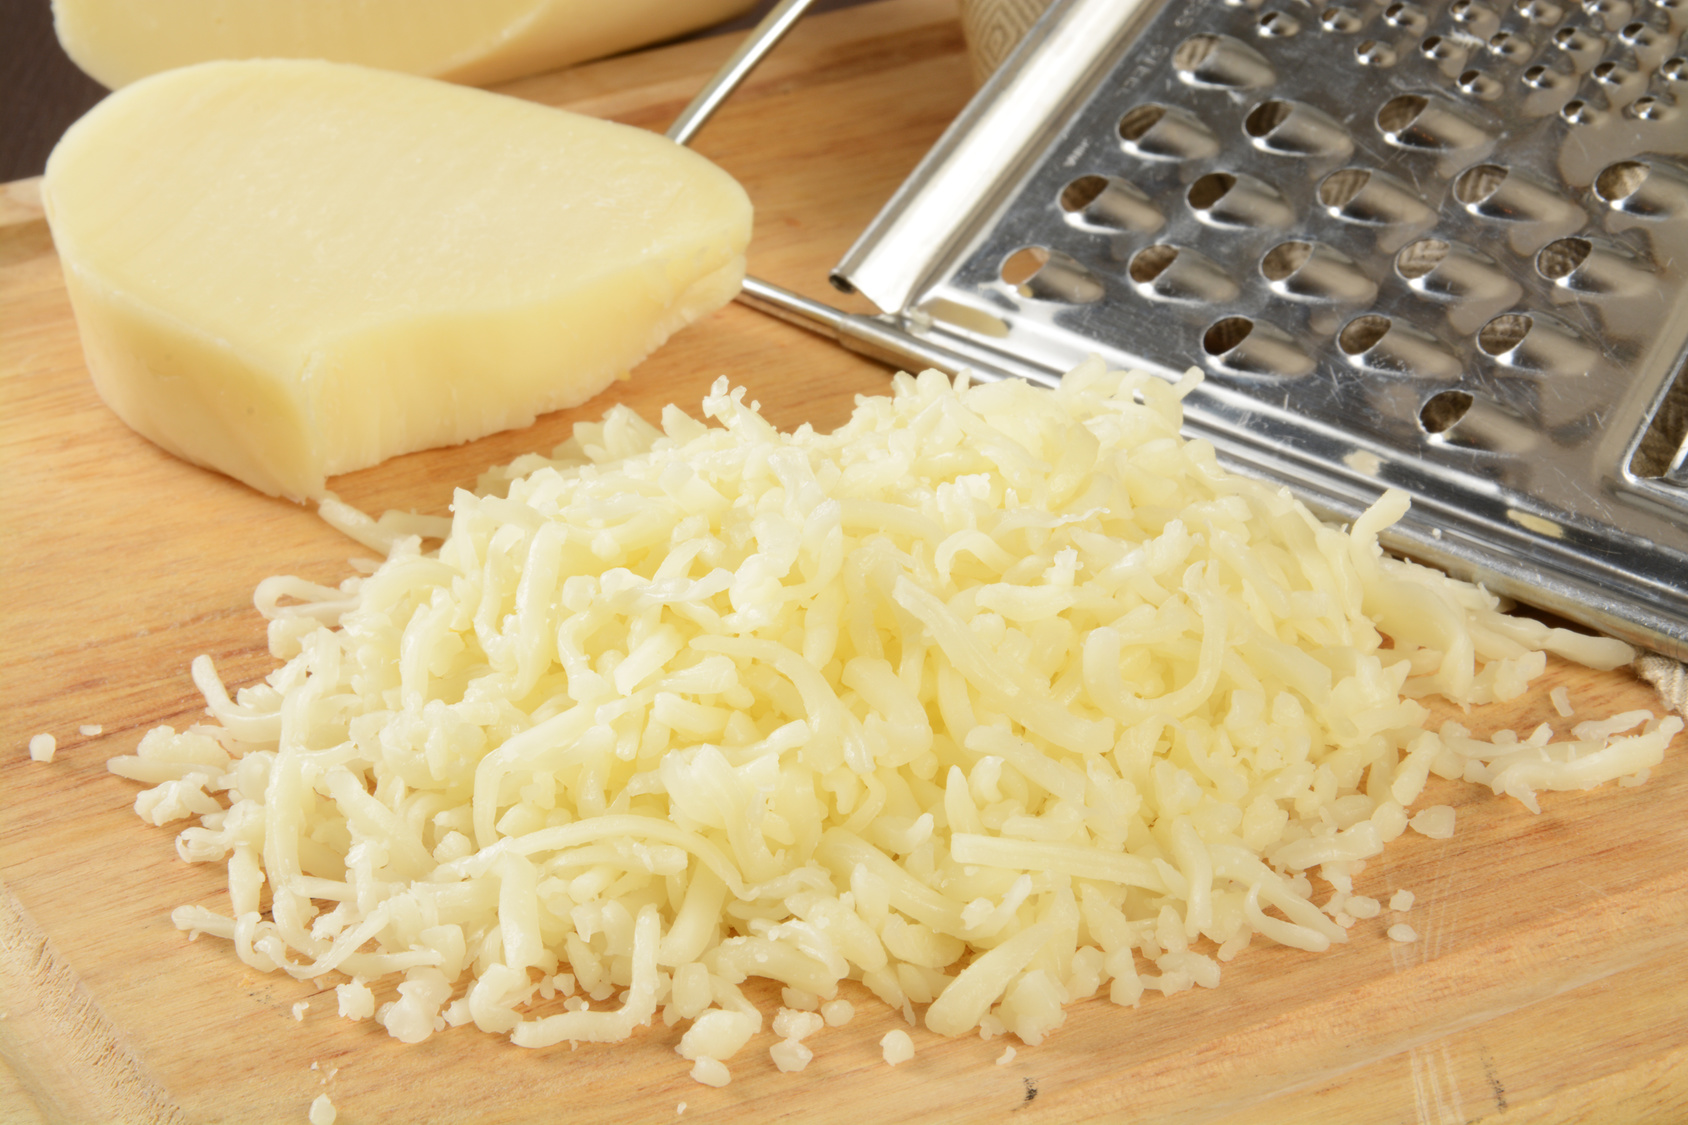 طريقة عمل الجبنة الموزاريلا في المنزل بأبسط الطرق وبأقل التكاليف بعيداً عن شرائها من المحلات